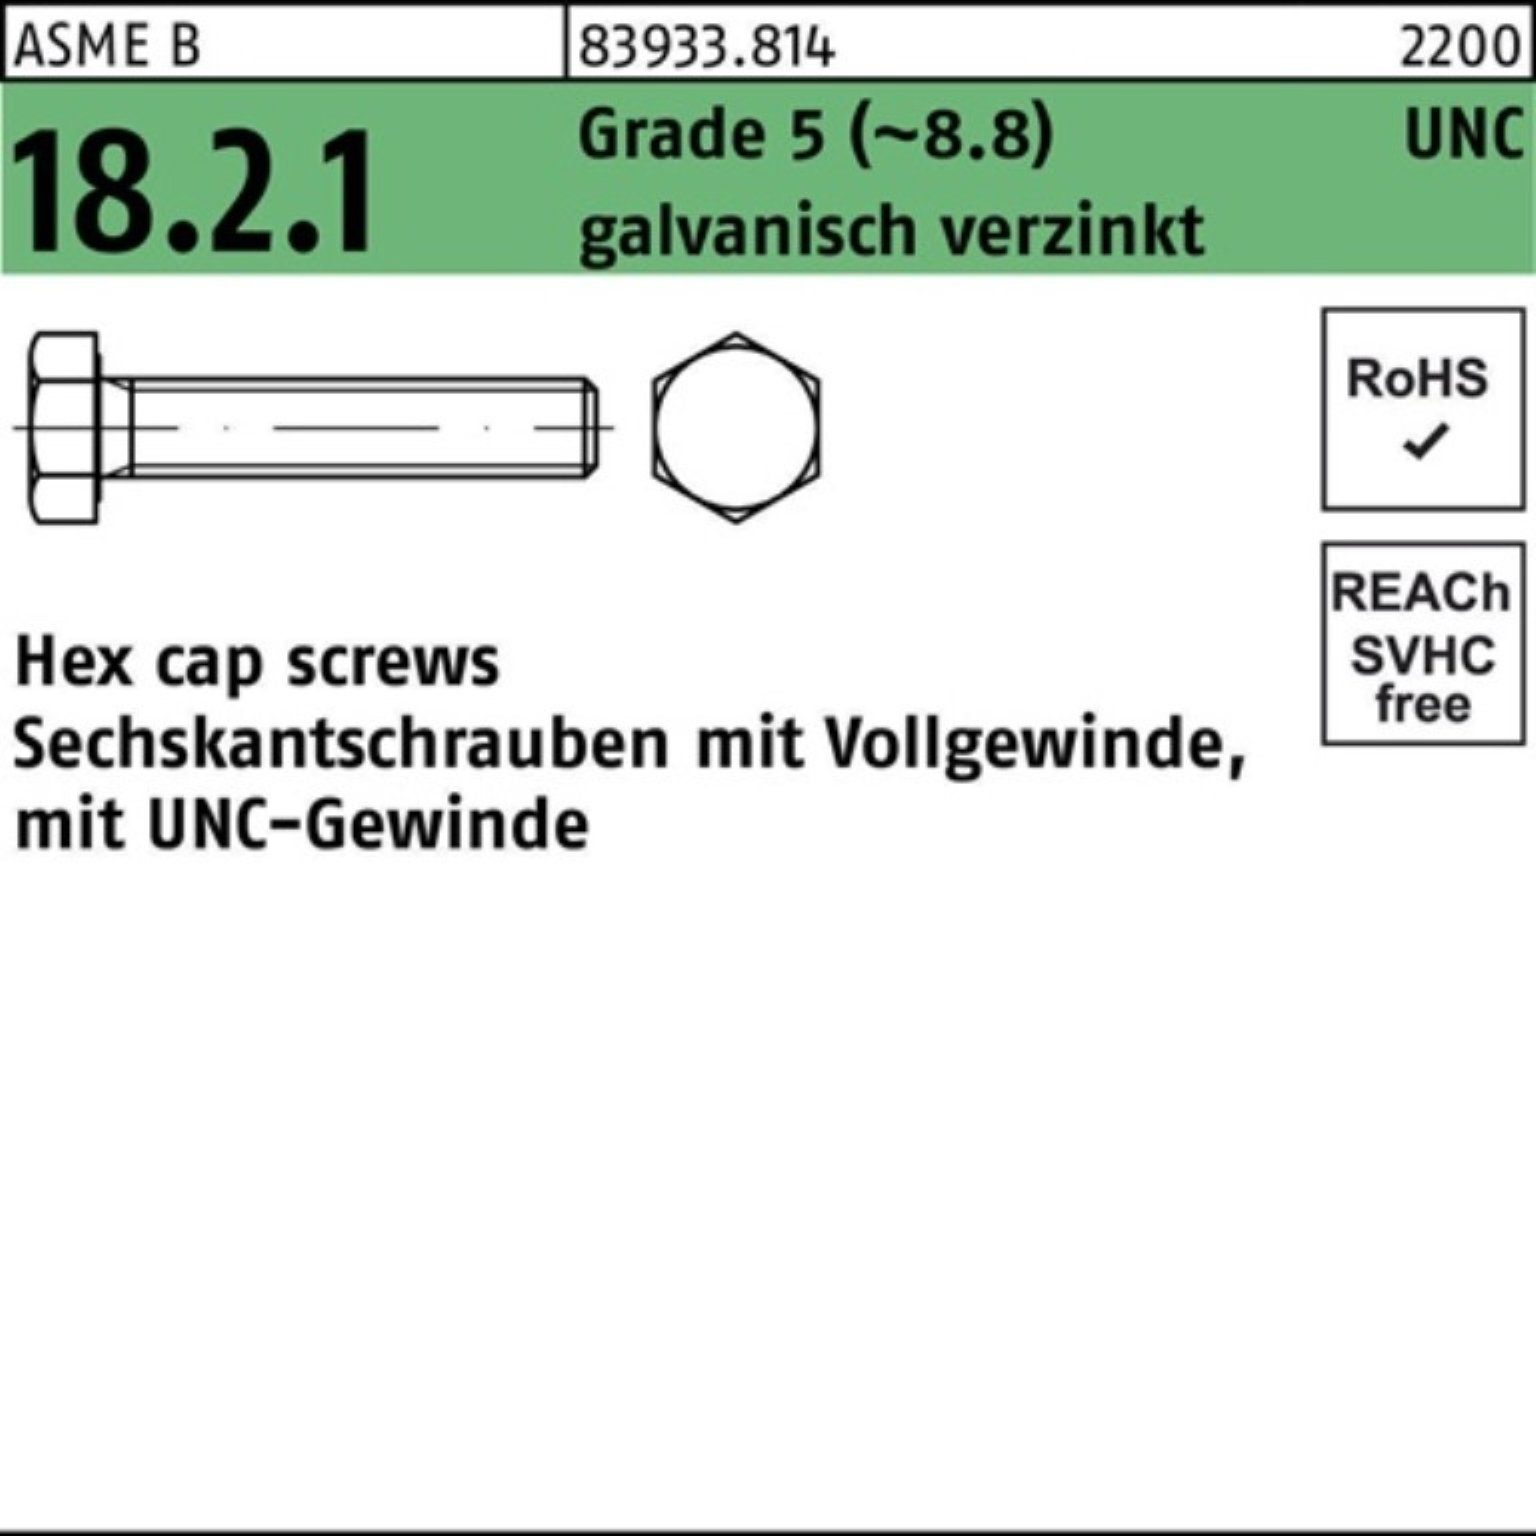 Reyher Sechskantschraube 100er Pack Sechskantschraube R 83933 UNC VG 1/2x7/8 Grade 5 (8.8) gal